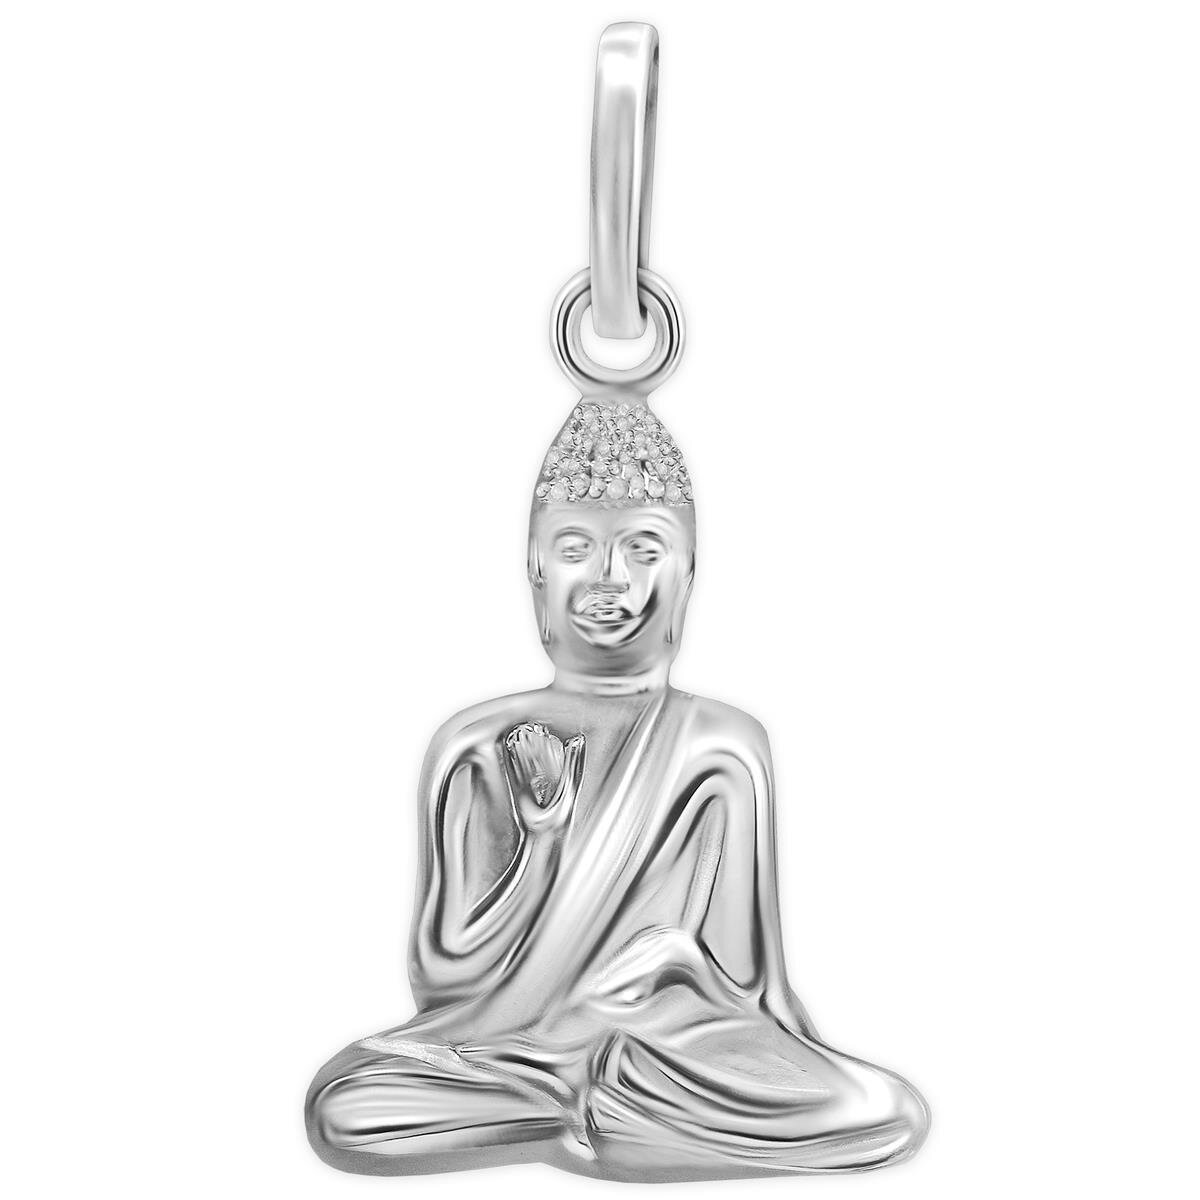 Silberner Anh&auml;nger Buddha schmal sitzend hochgl&auml;nzend poliert Echt Silber 925